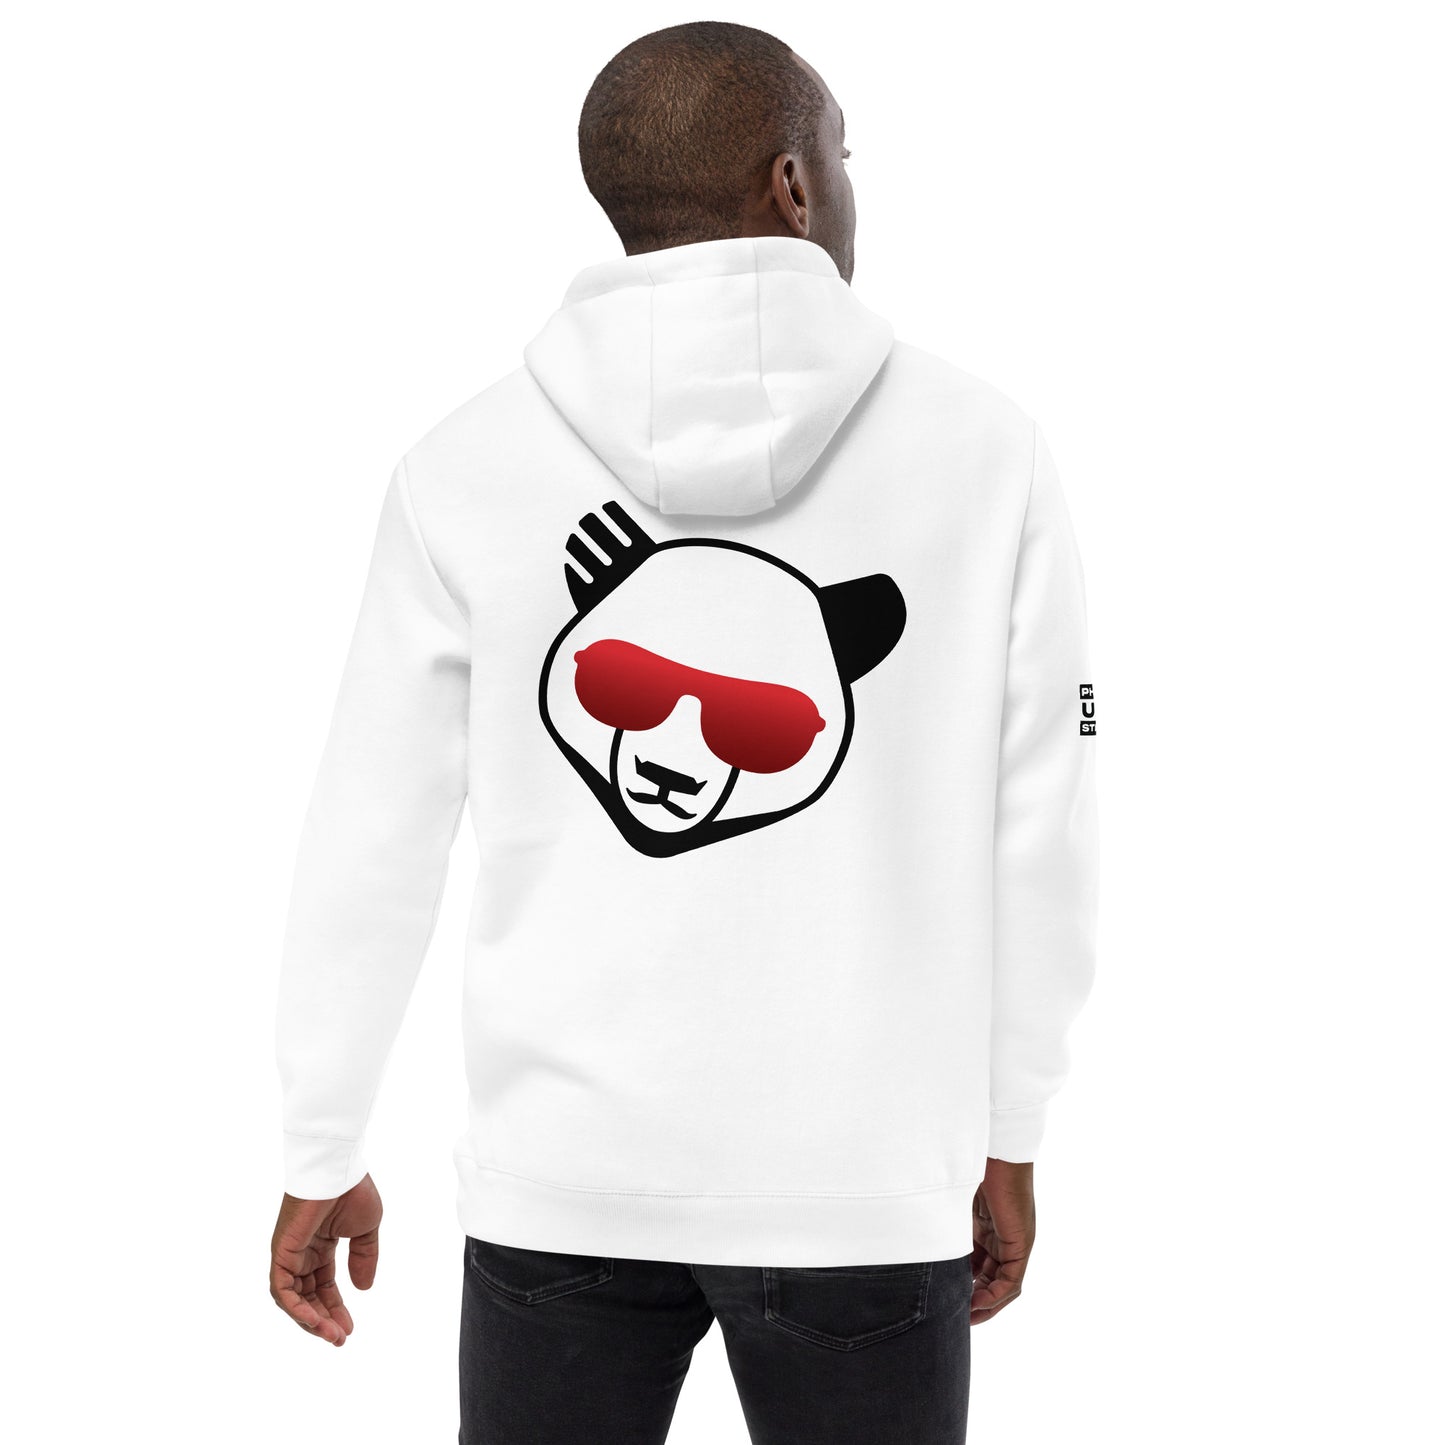 Graffiti Phat Panda- Unisex fashion hoodie - PHAT PANDA URBAN STREETWEAR